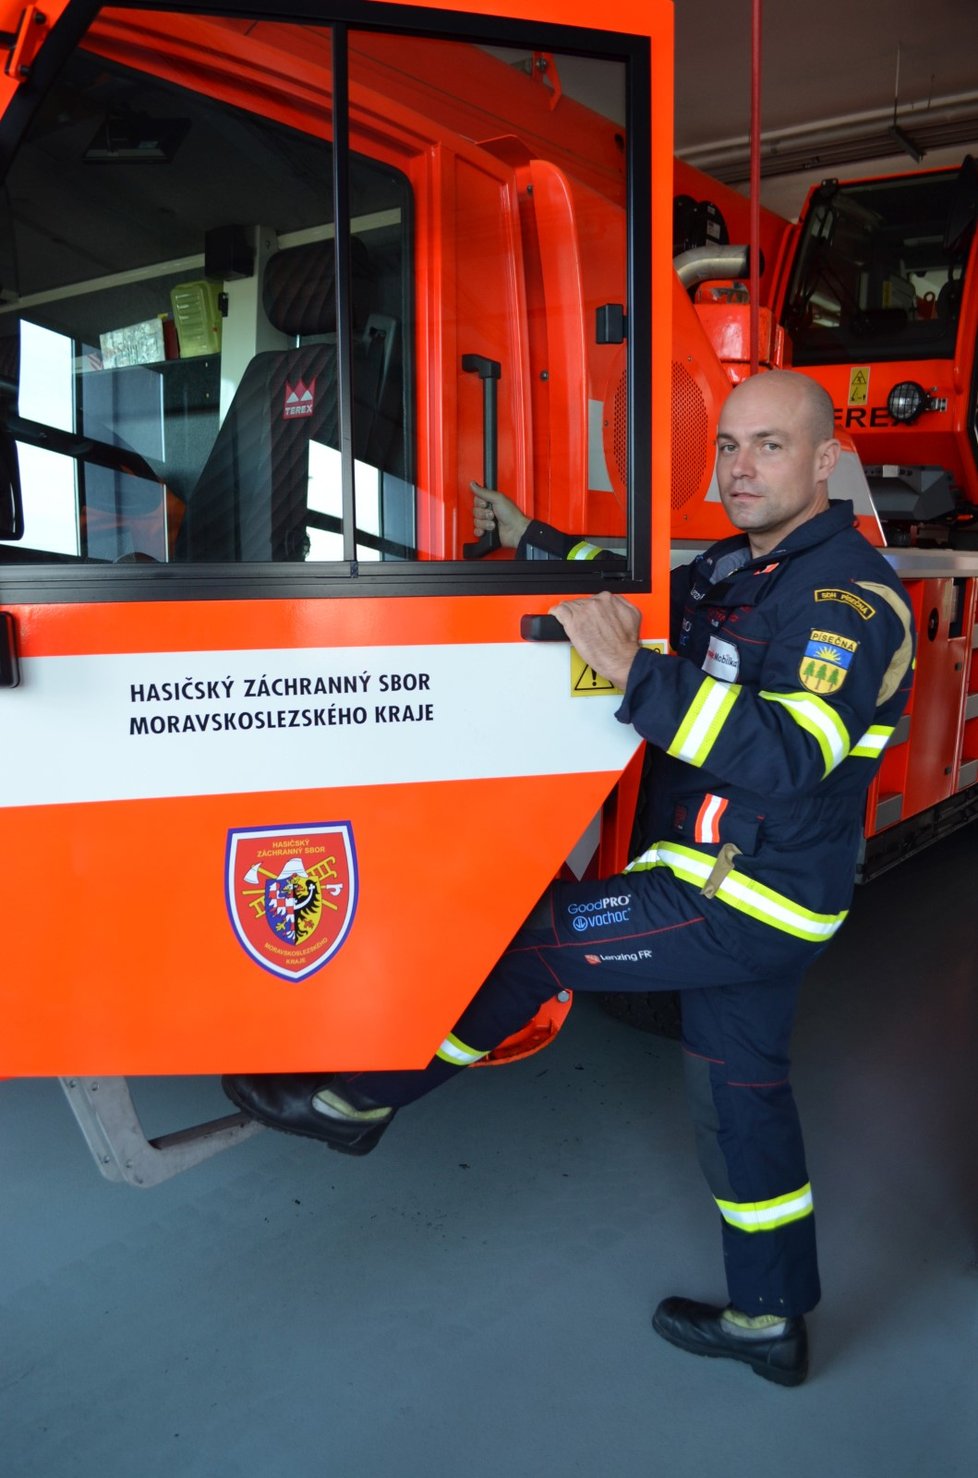 Vítěz celostátního šampionátu o nejtvrdšího hasiče Jaroslav Hanzel (35) je z karvinské stanice.